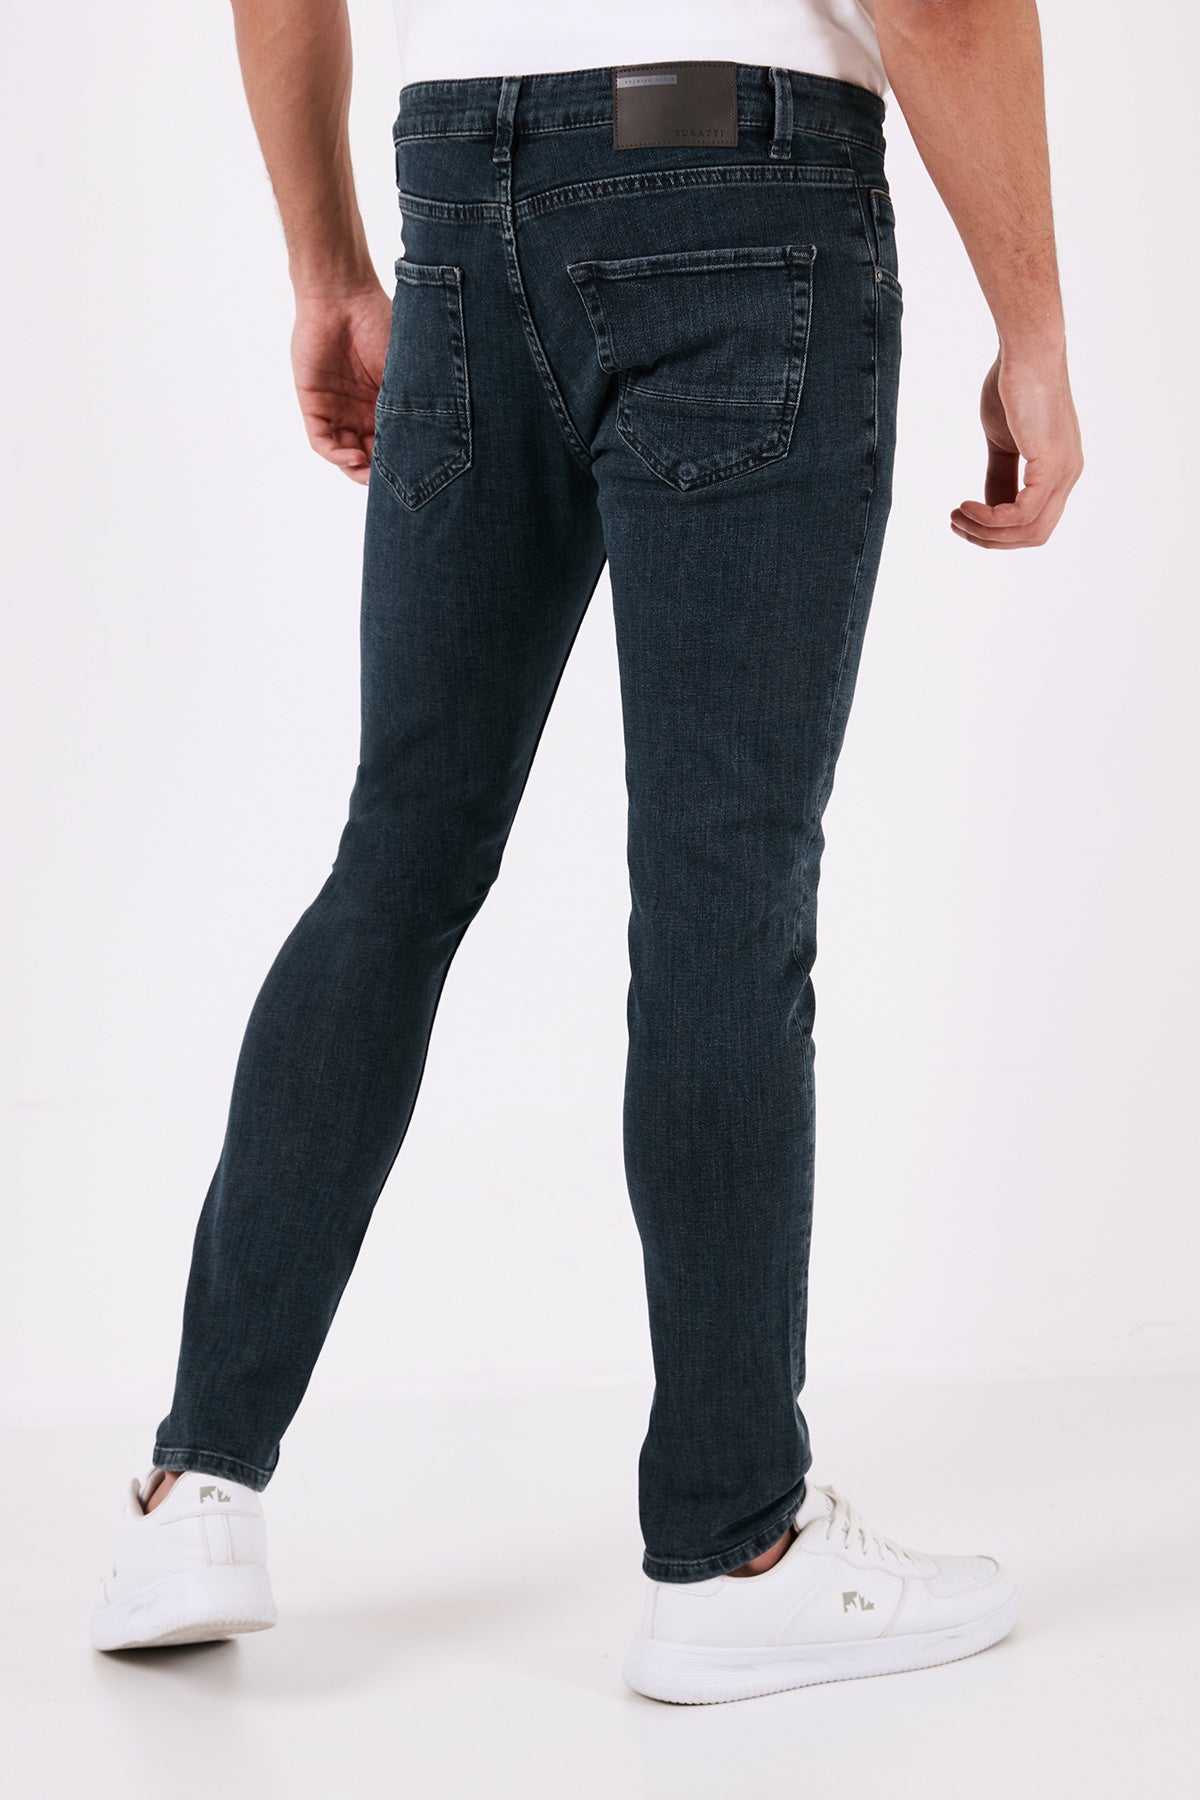 Buratti Pamuklu Normal Bel Slim Fit Dar Paça Jeans Erkek Kot Pantolon 1130J75NAPOLI MAVİ